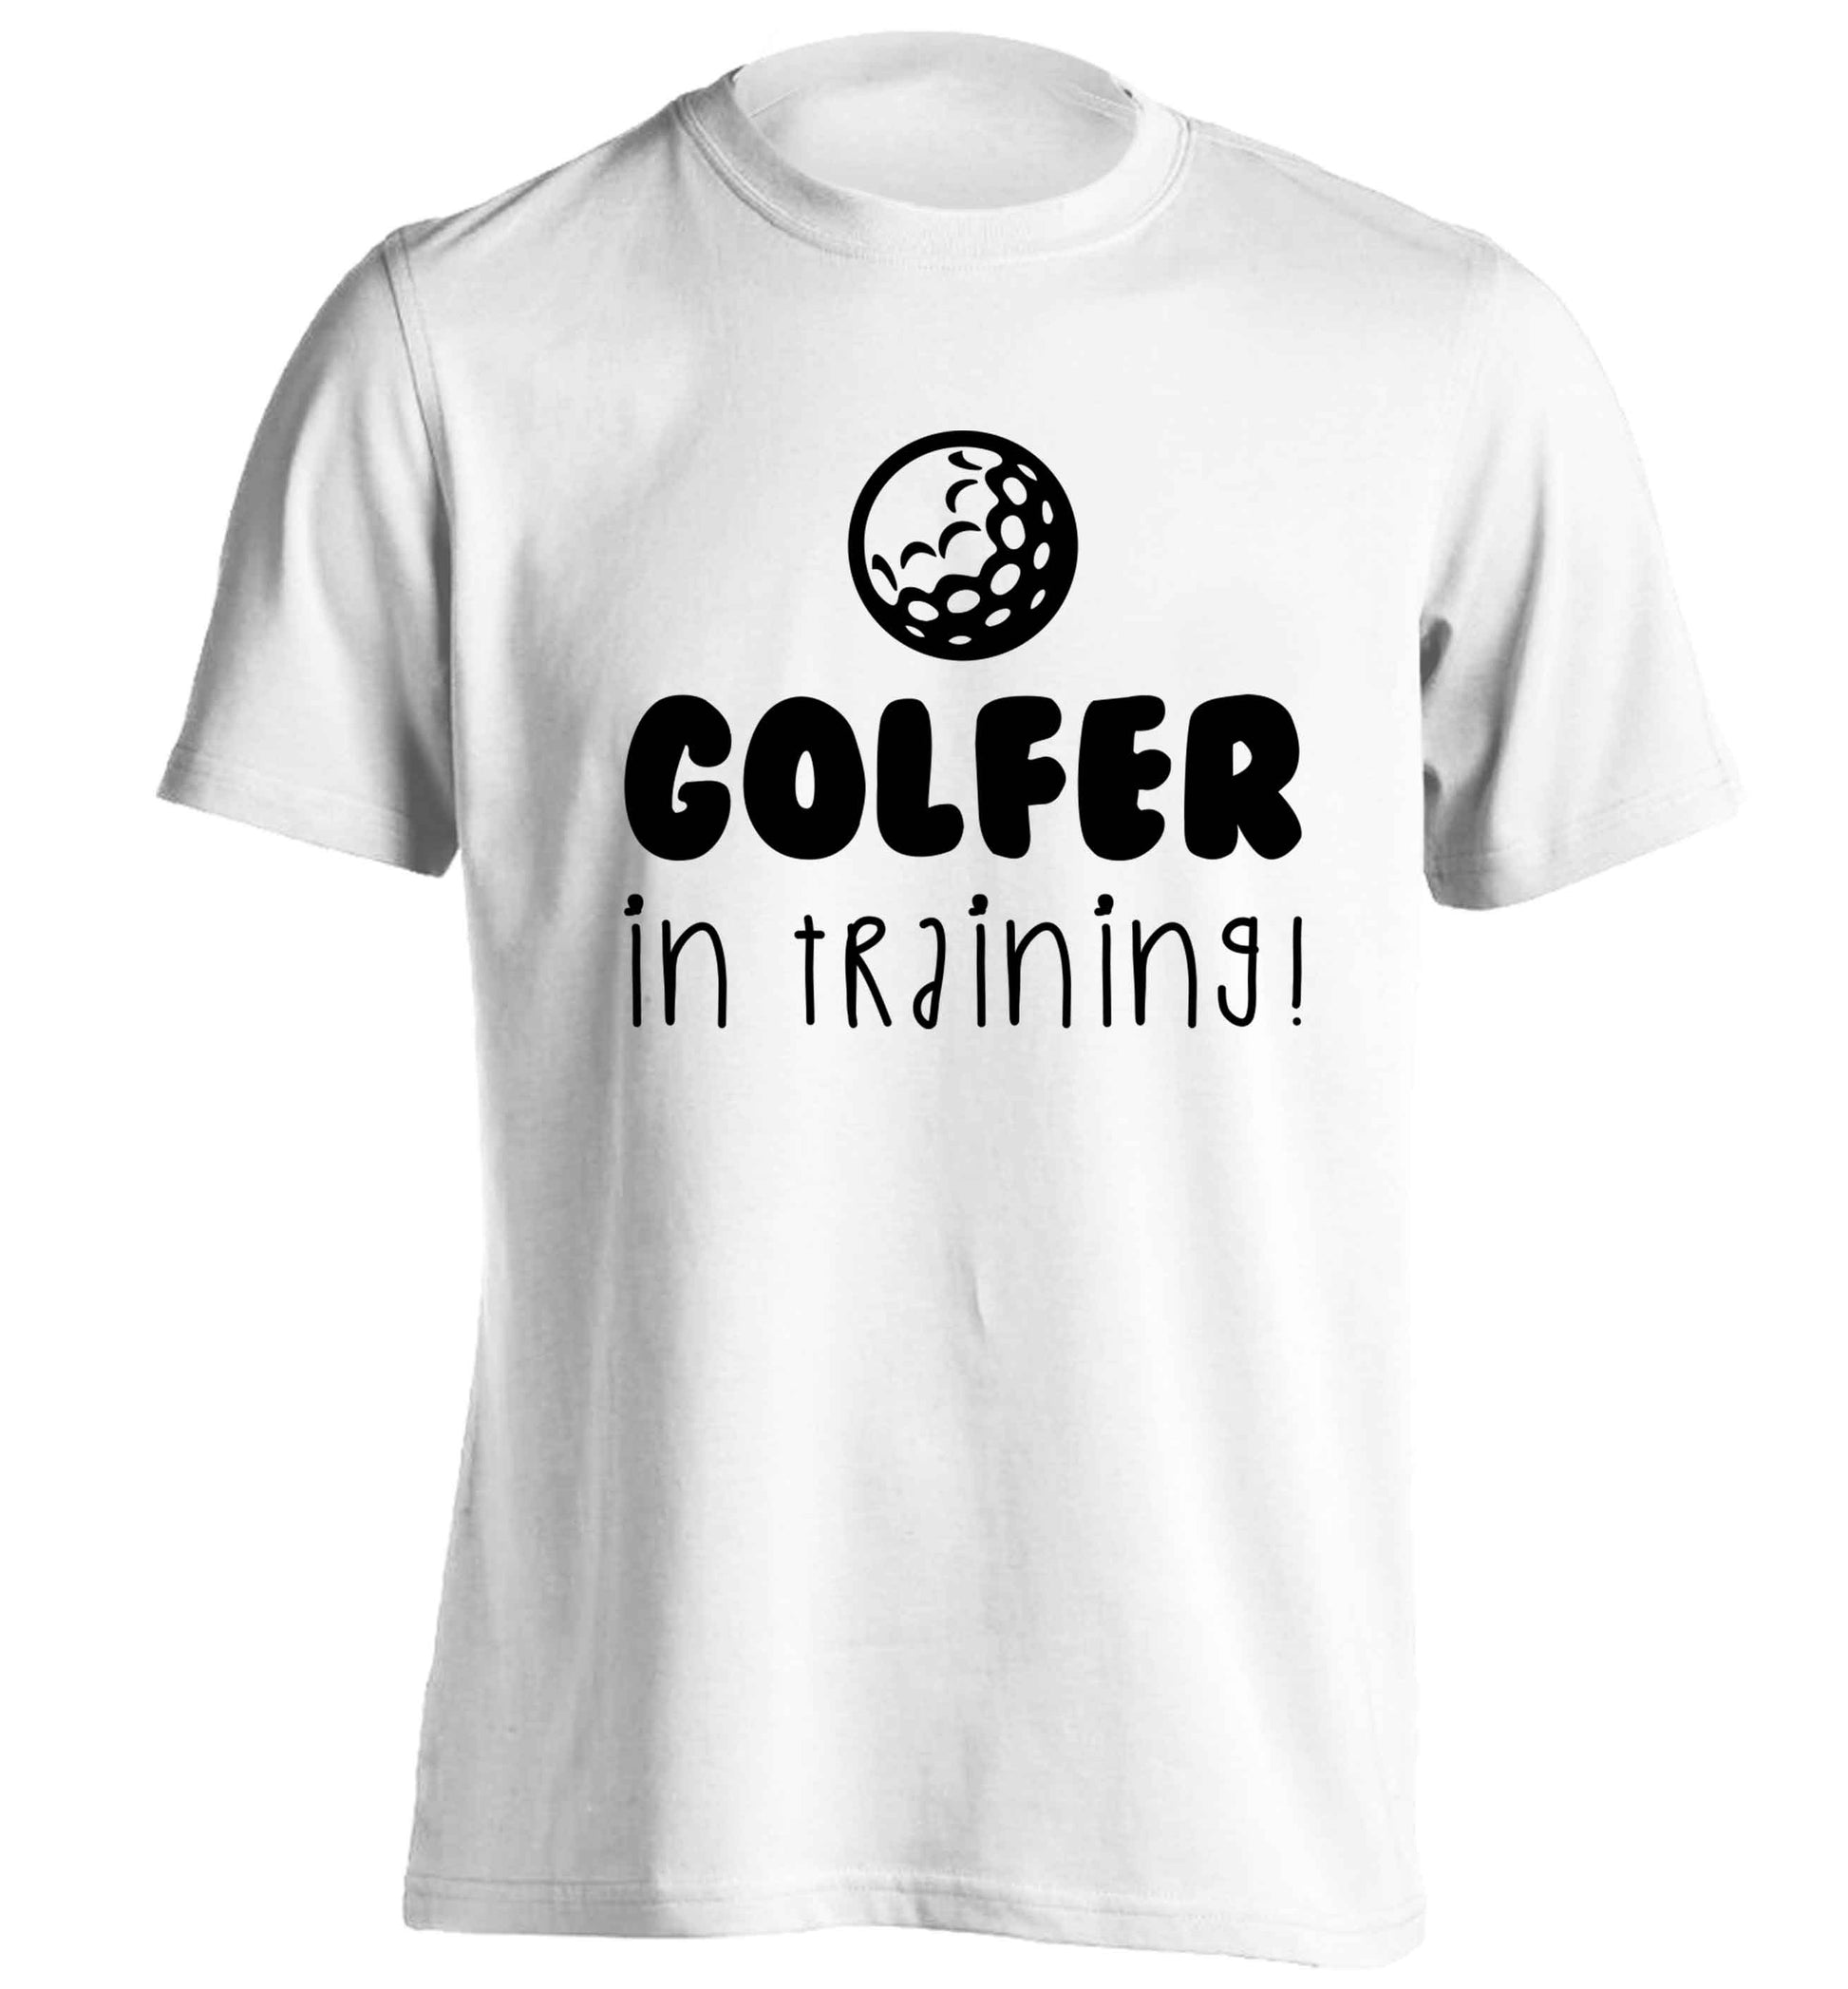 Golfer in training adults unisex white Tshirt 2XL